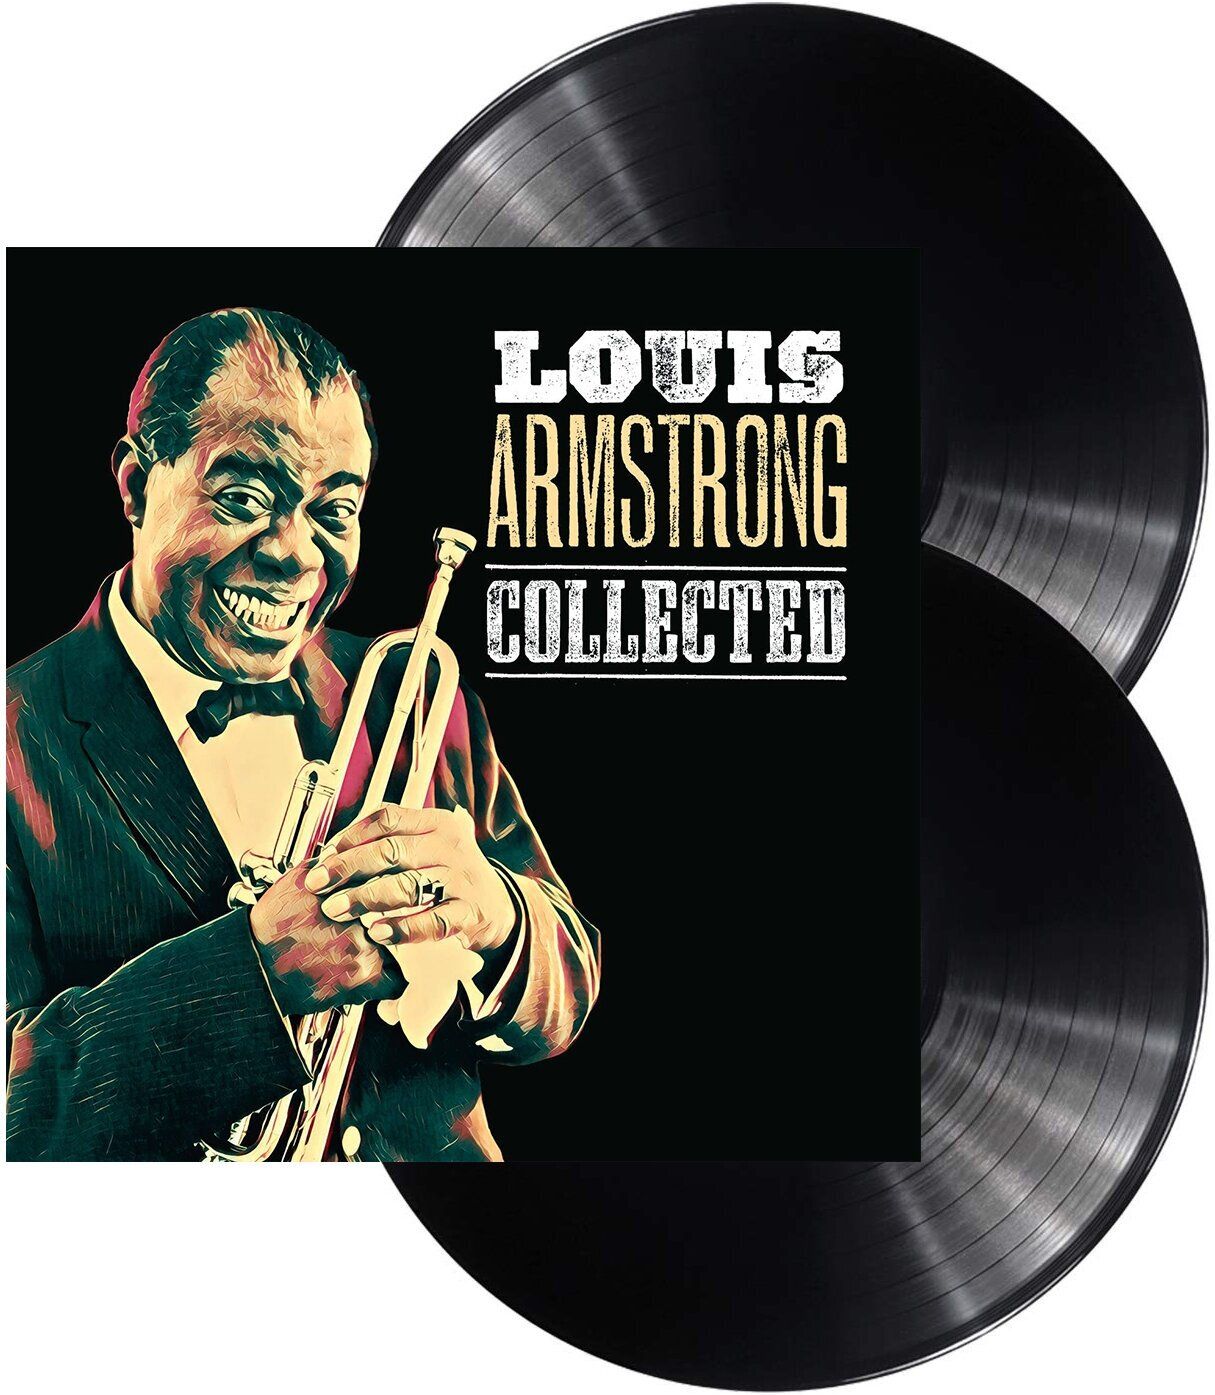 Виниловая пластинка Armstrong, Louis, Collected (0600753814345) мужская футболка джазовый трубач s зеленый